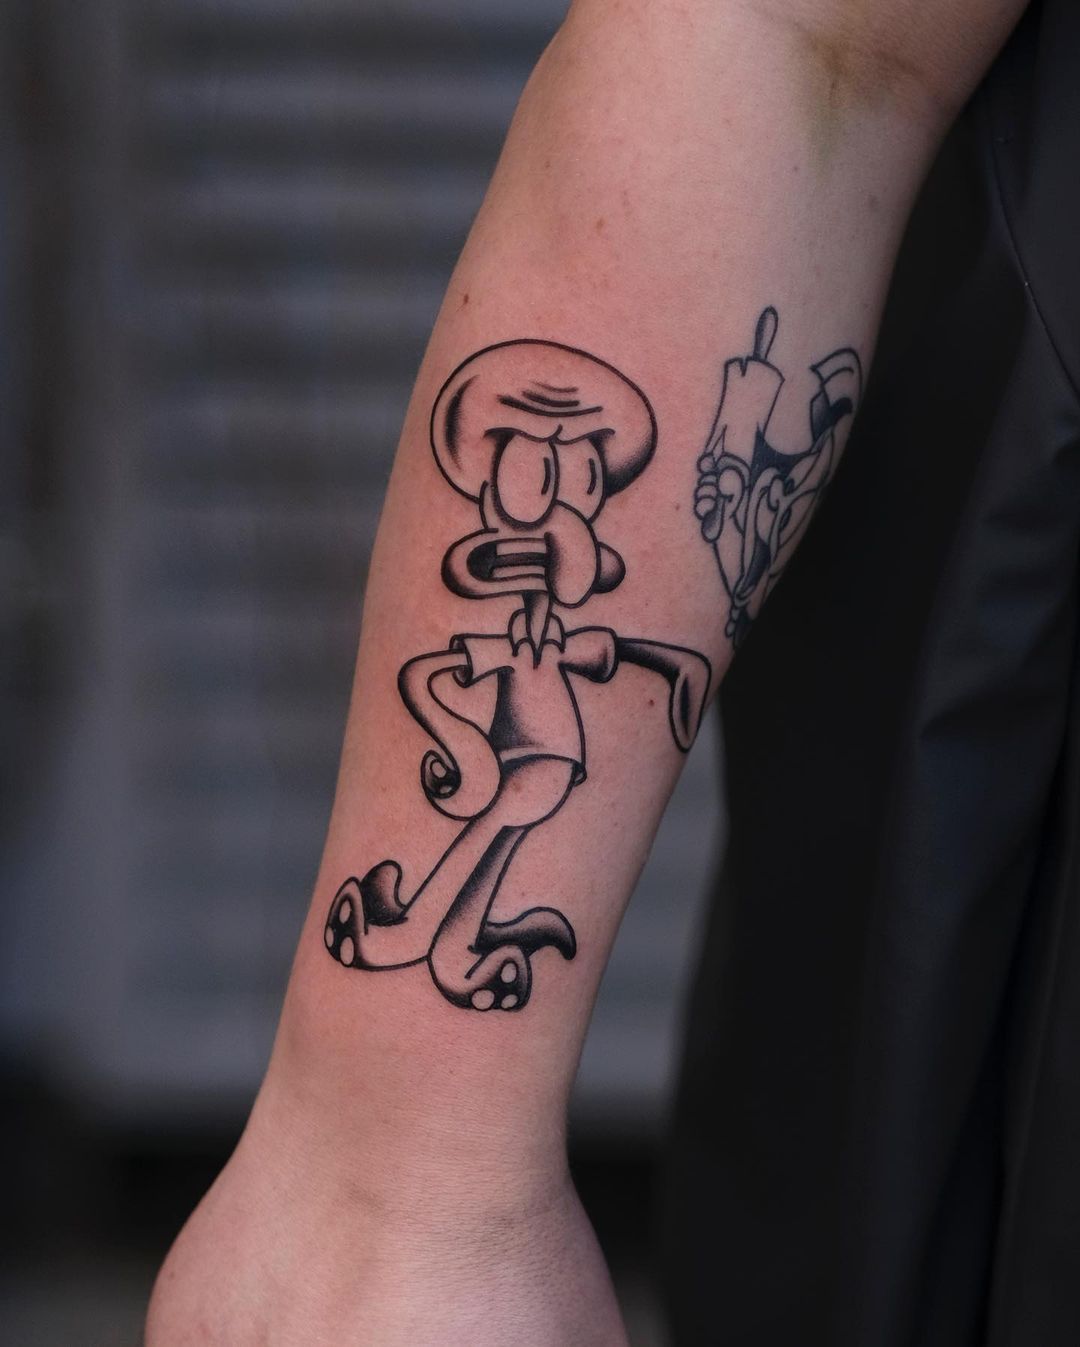 Ormo tatuażysta kreskówkowy